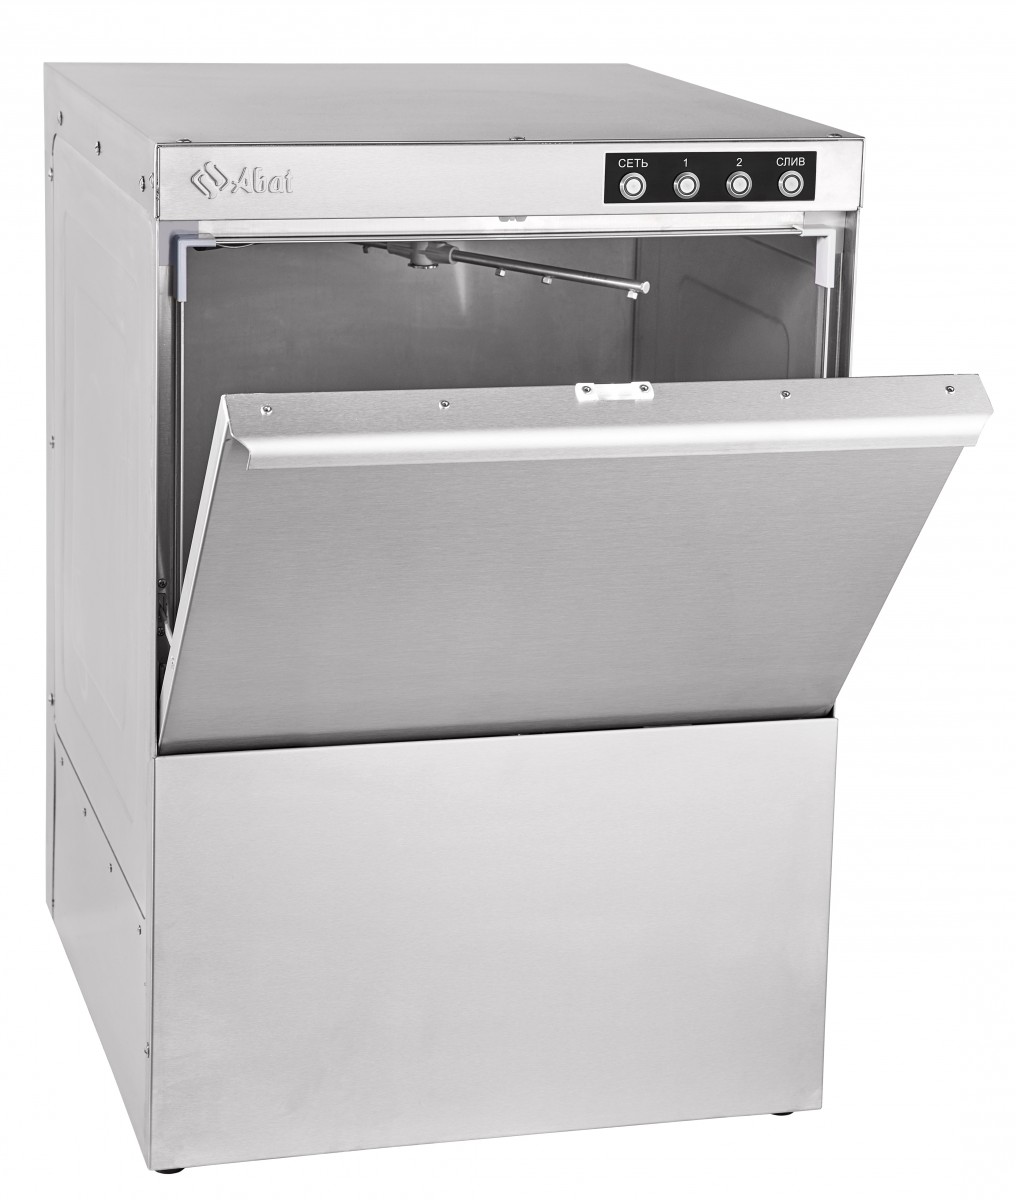 Фронтальная посудомоечная машина Abat МПК-500Ф-01-230